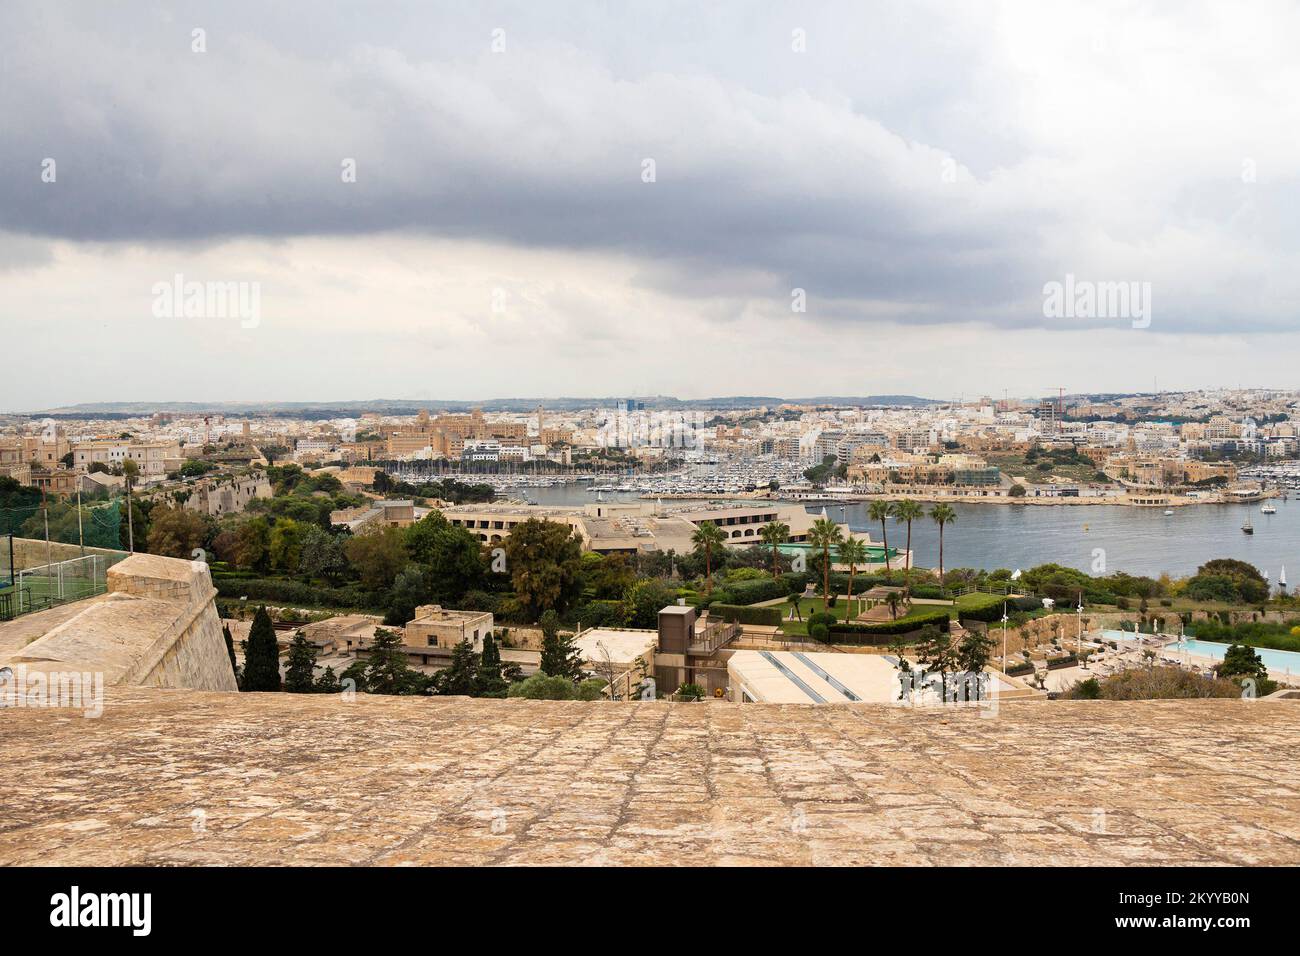 Vue panoramique depuis le jardin fortification de la Valette sur le Floriana Grand Hotel Excelsior avec palmiers, baie et port de plaisance de Malte Msida Banque D'Images